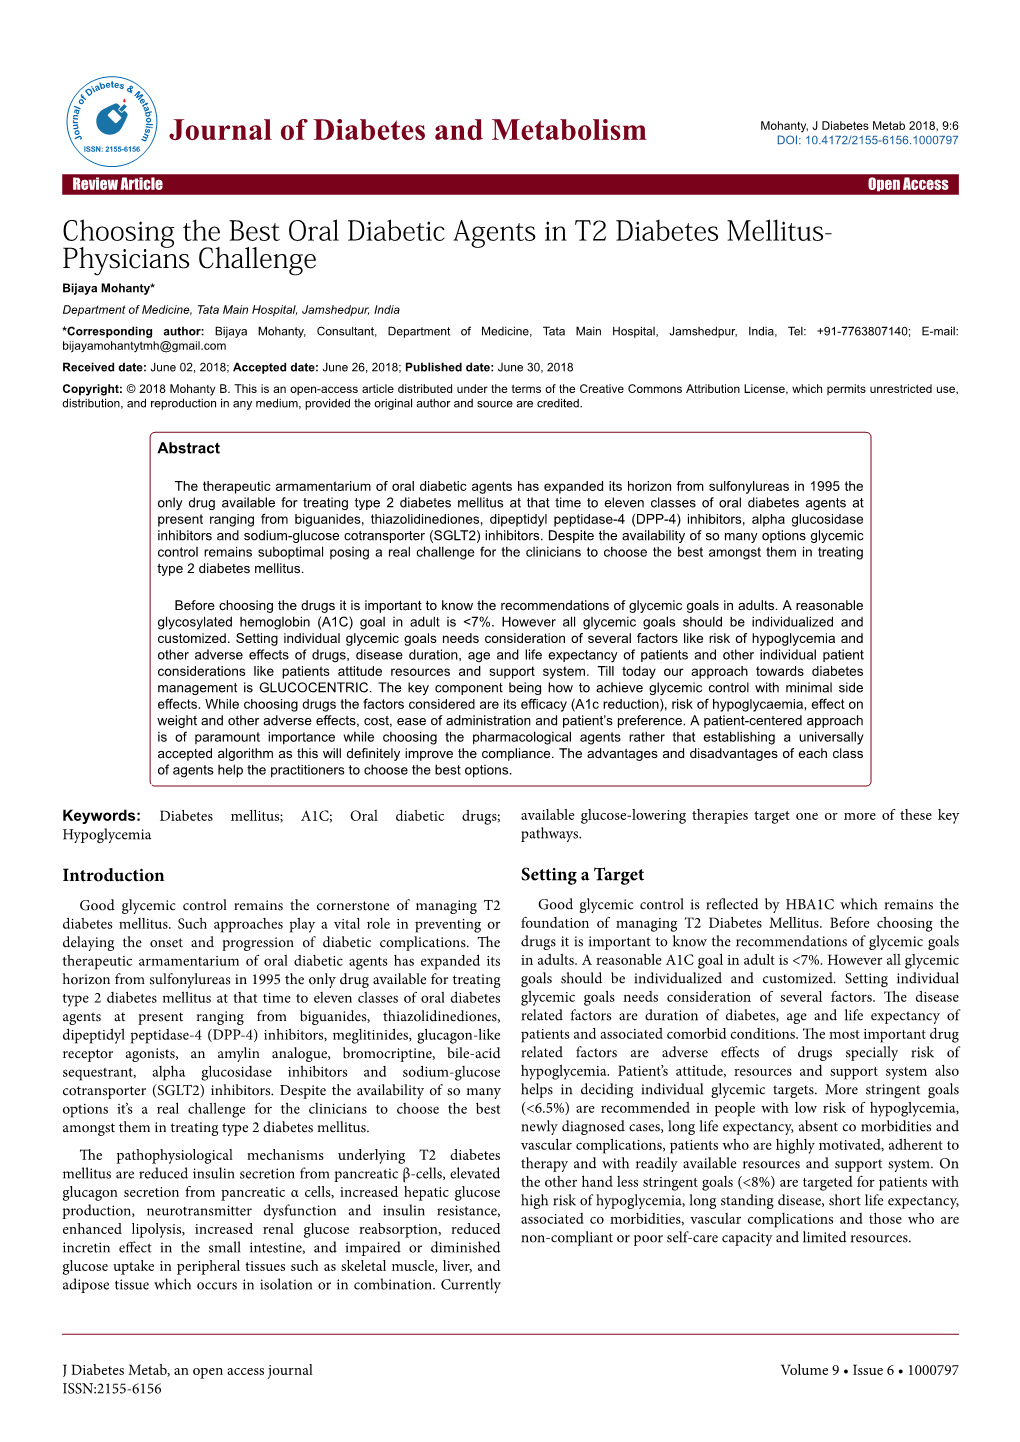 Choosing the Best Oral Diabetic Agents in T2 Diabetes Mellitus